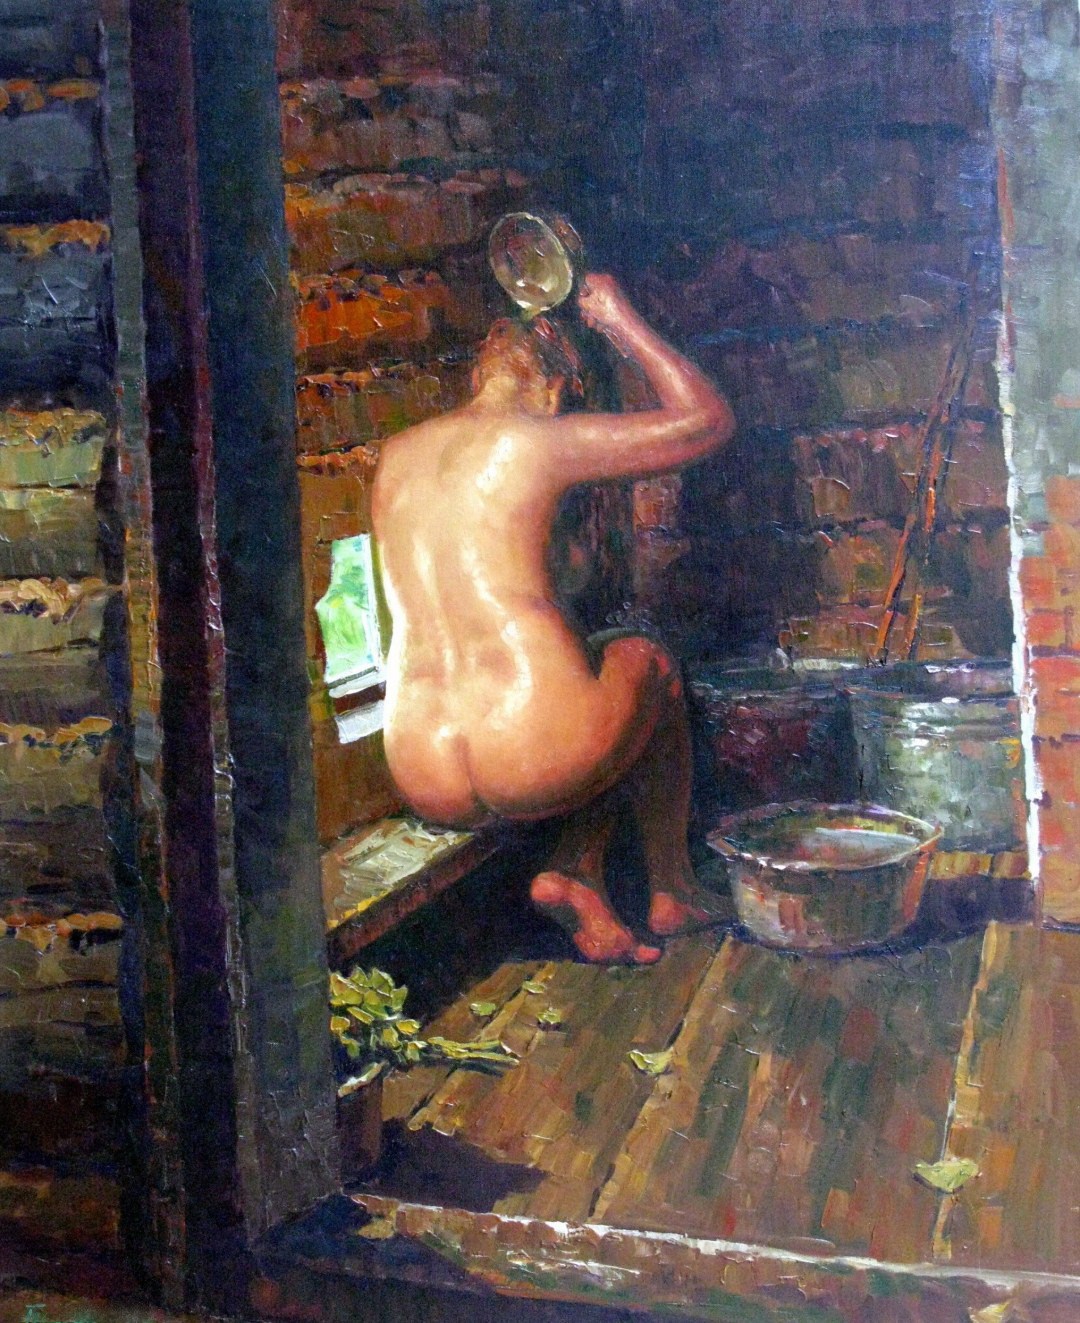 общественная баня с голыми женщинами фото 57